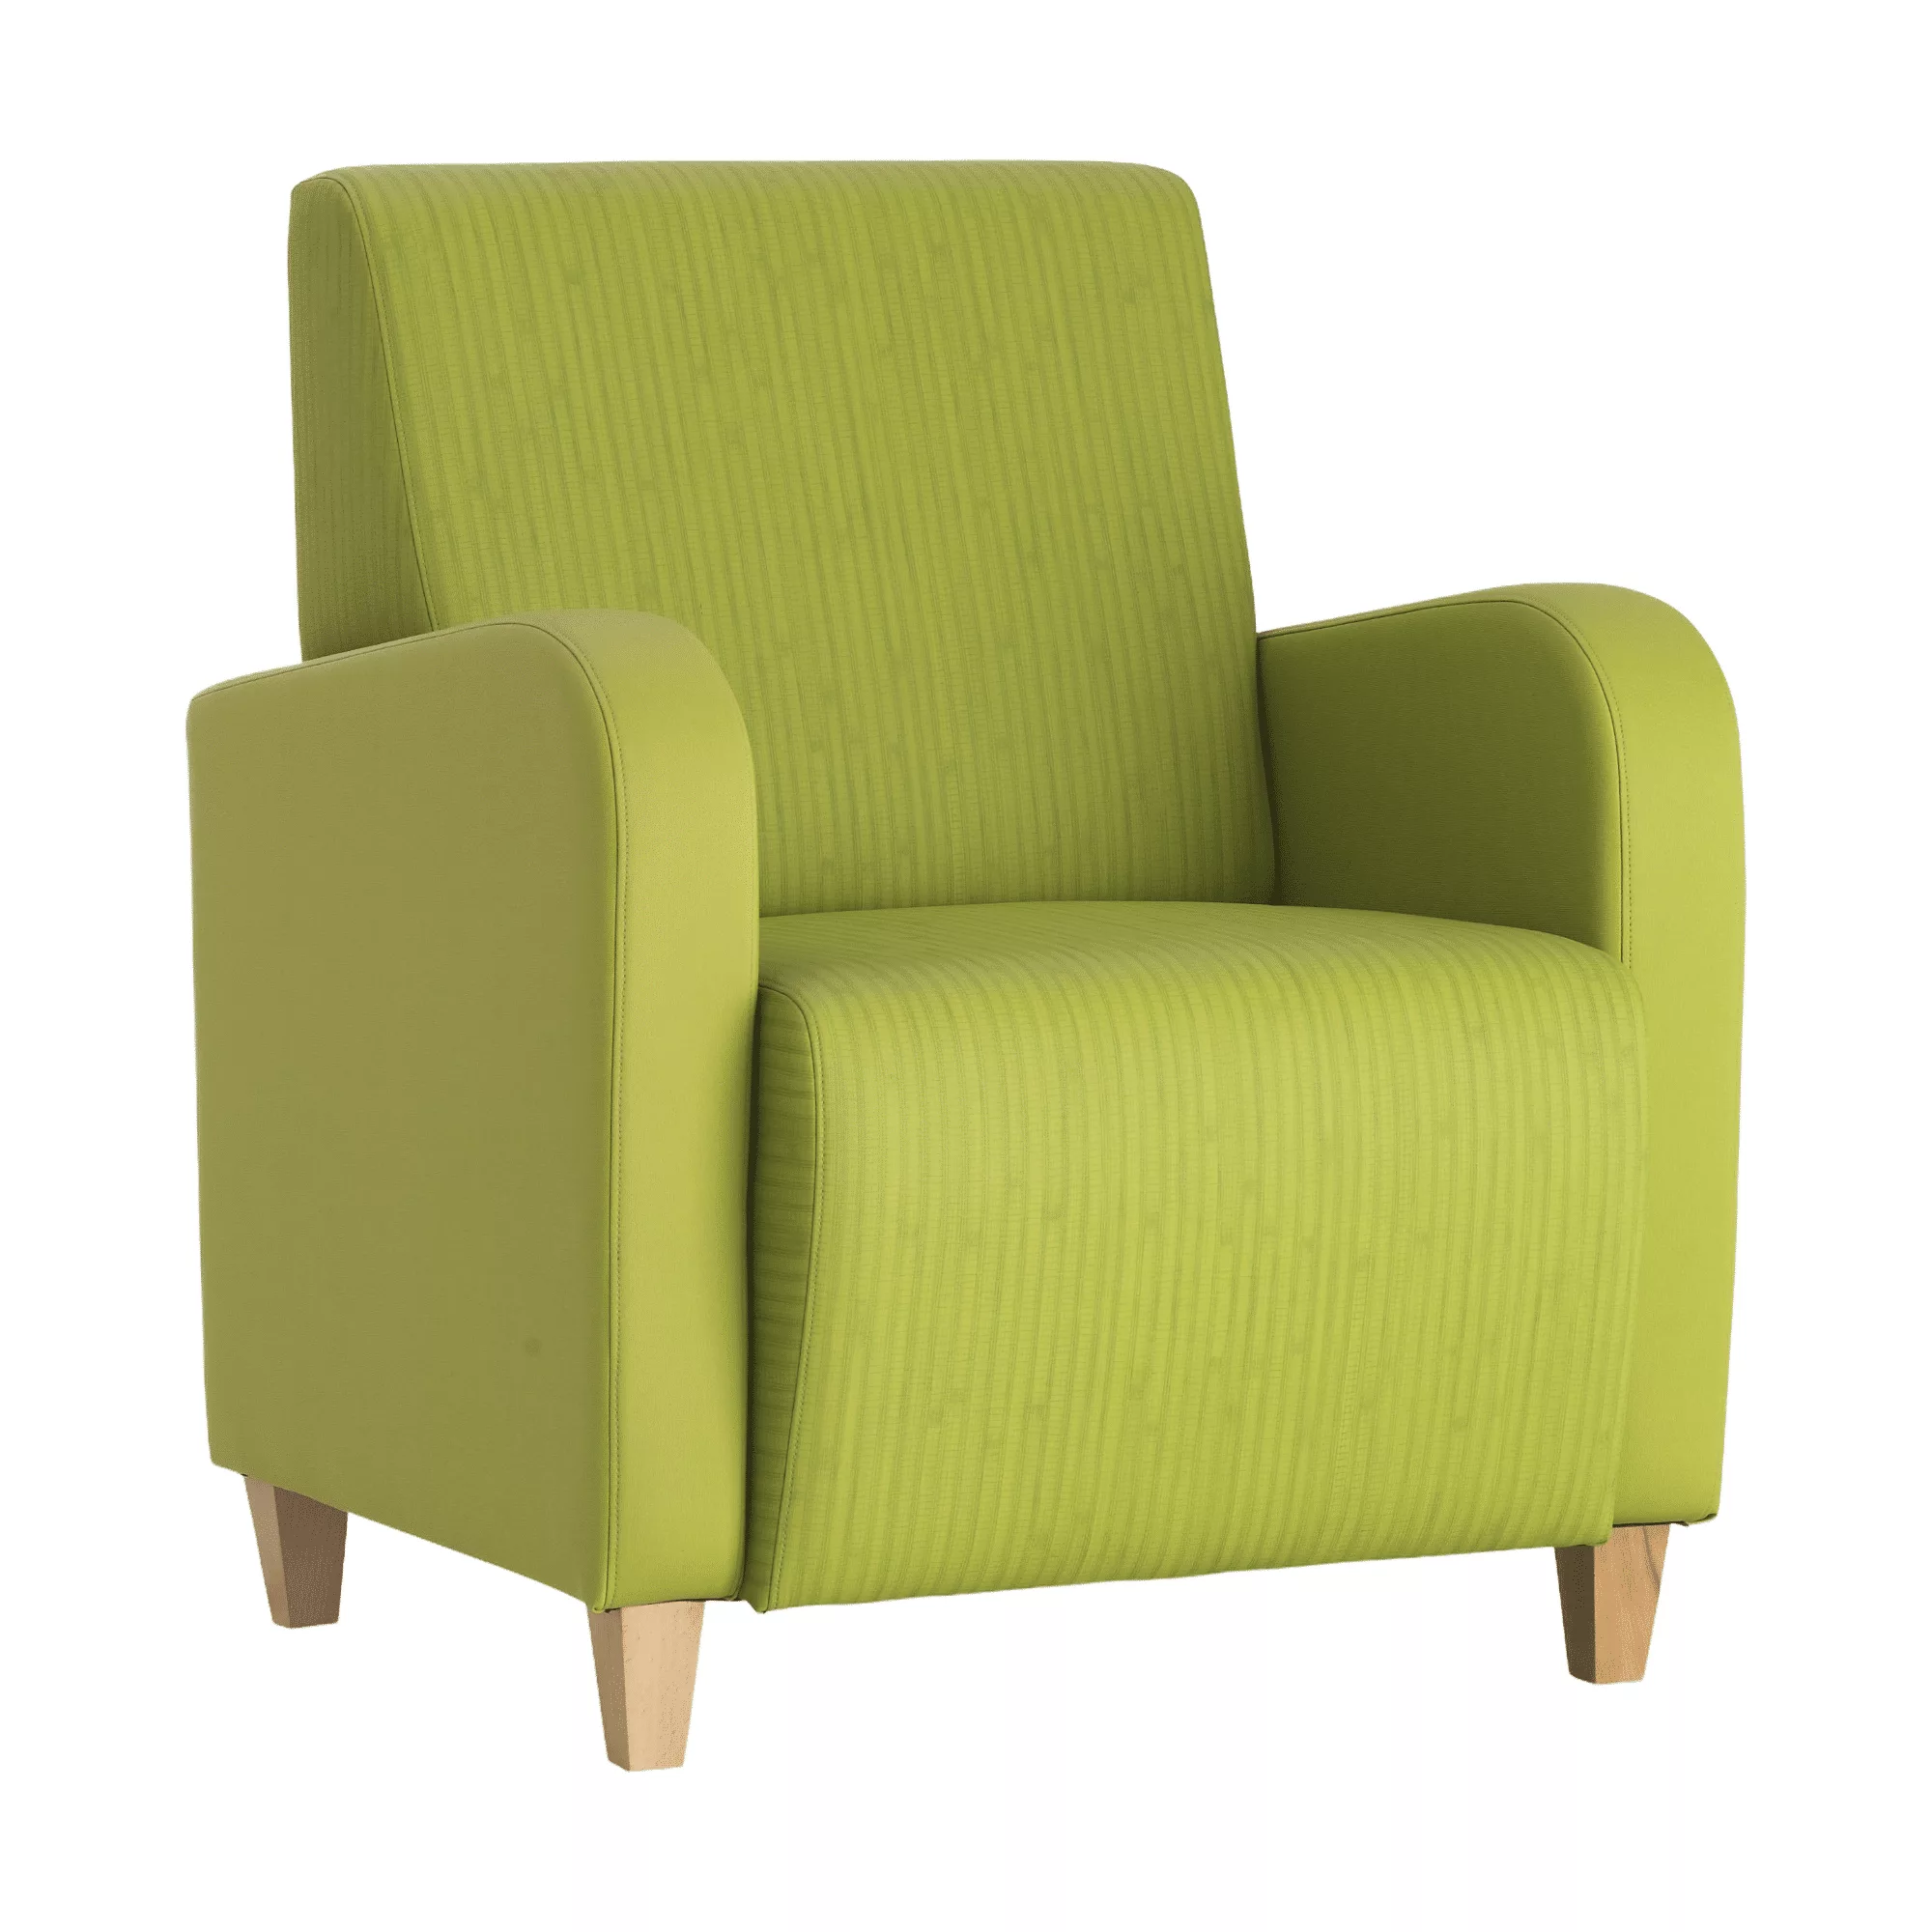 Groene fauteuil met afgeronde armleuningen op houten meubelpoten.